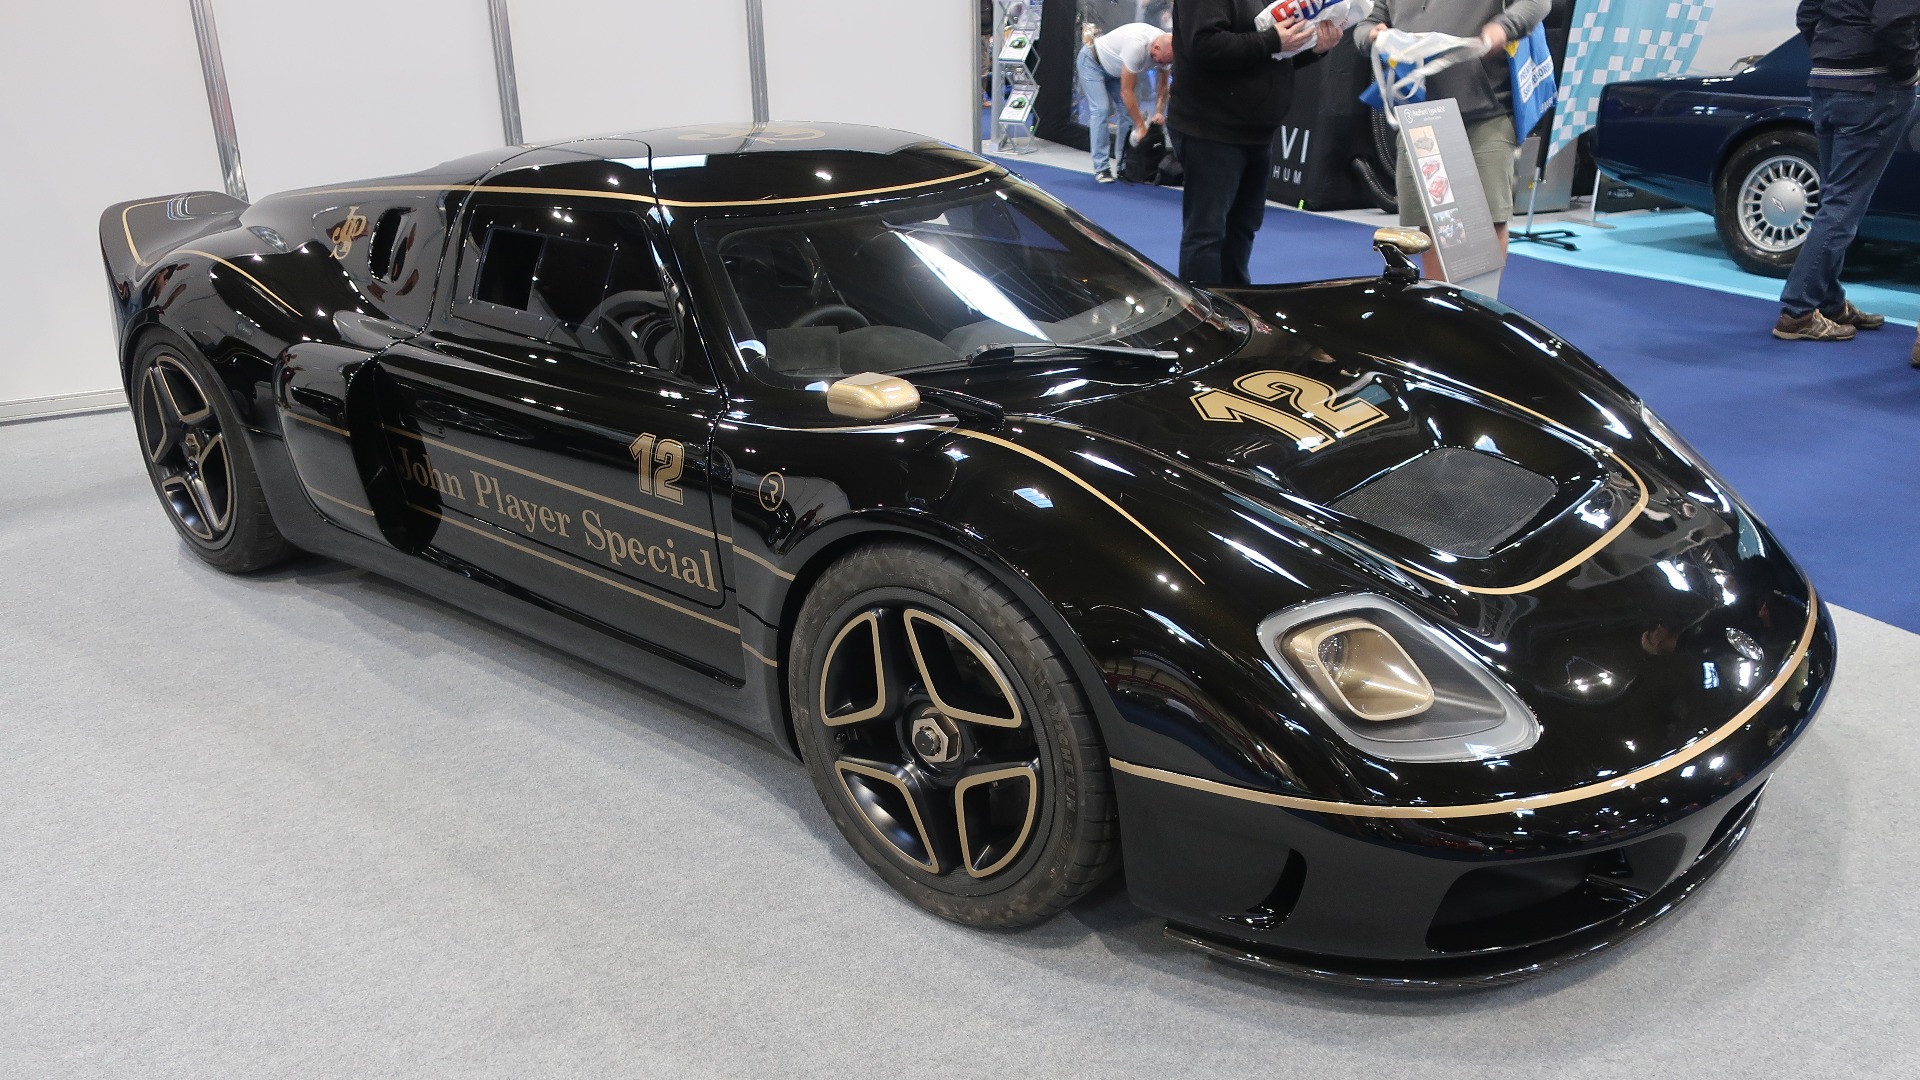 En steintøff Radford Type 62-2. En bil som kom til da noen entusiaster i 2020 bestemte seg for å lage en ny sportsbil inspirert av racerbilen Lotus 62. Den ser aldeles praktfull ut i klassisk sort og gull John Player Special dekor. 